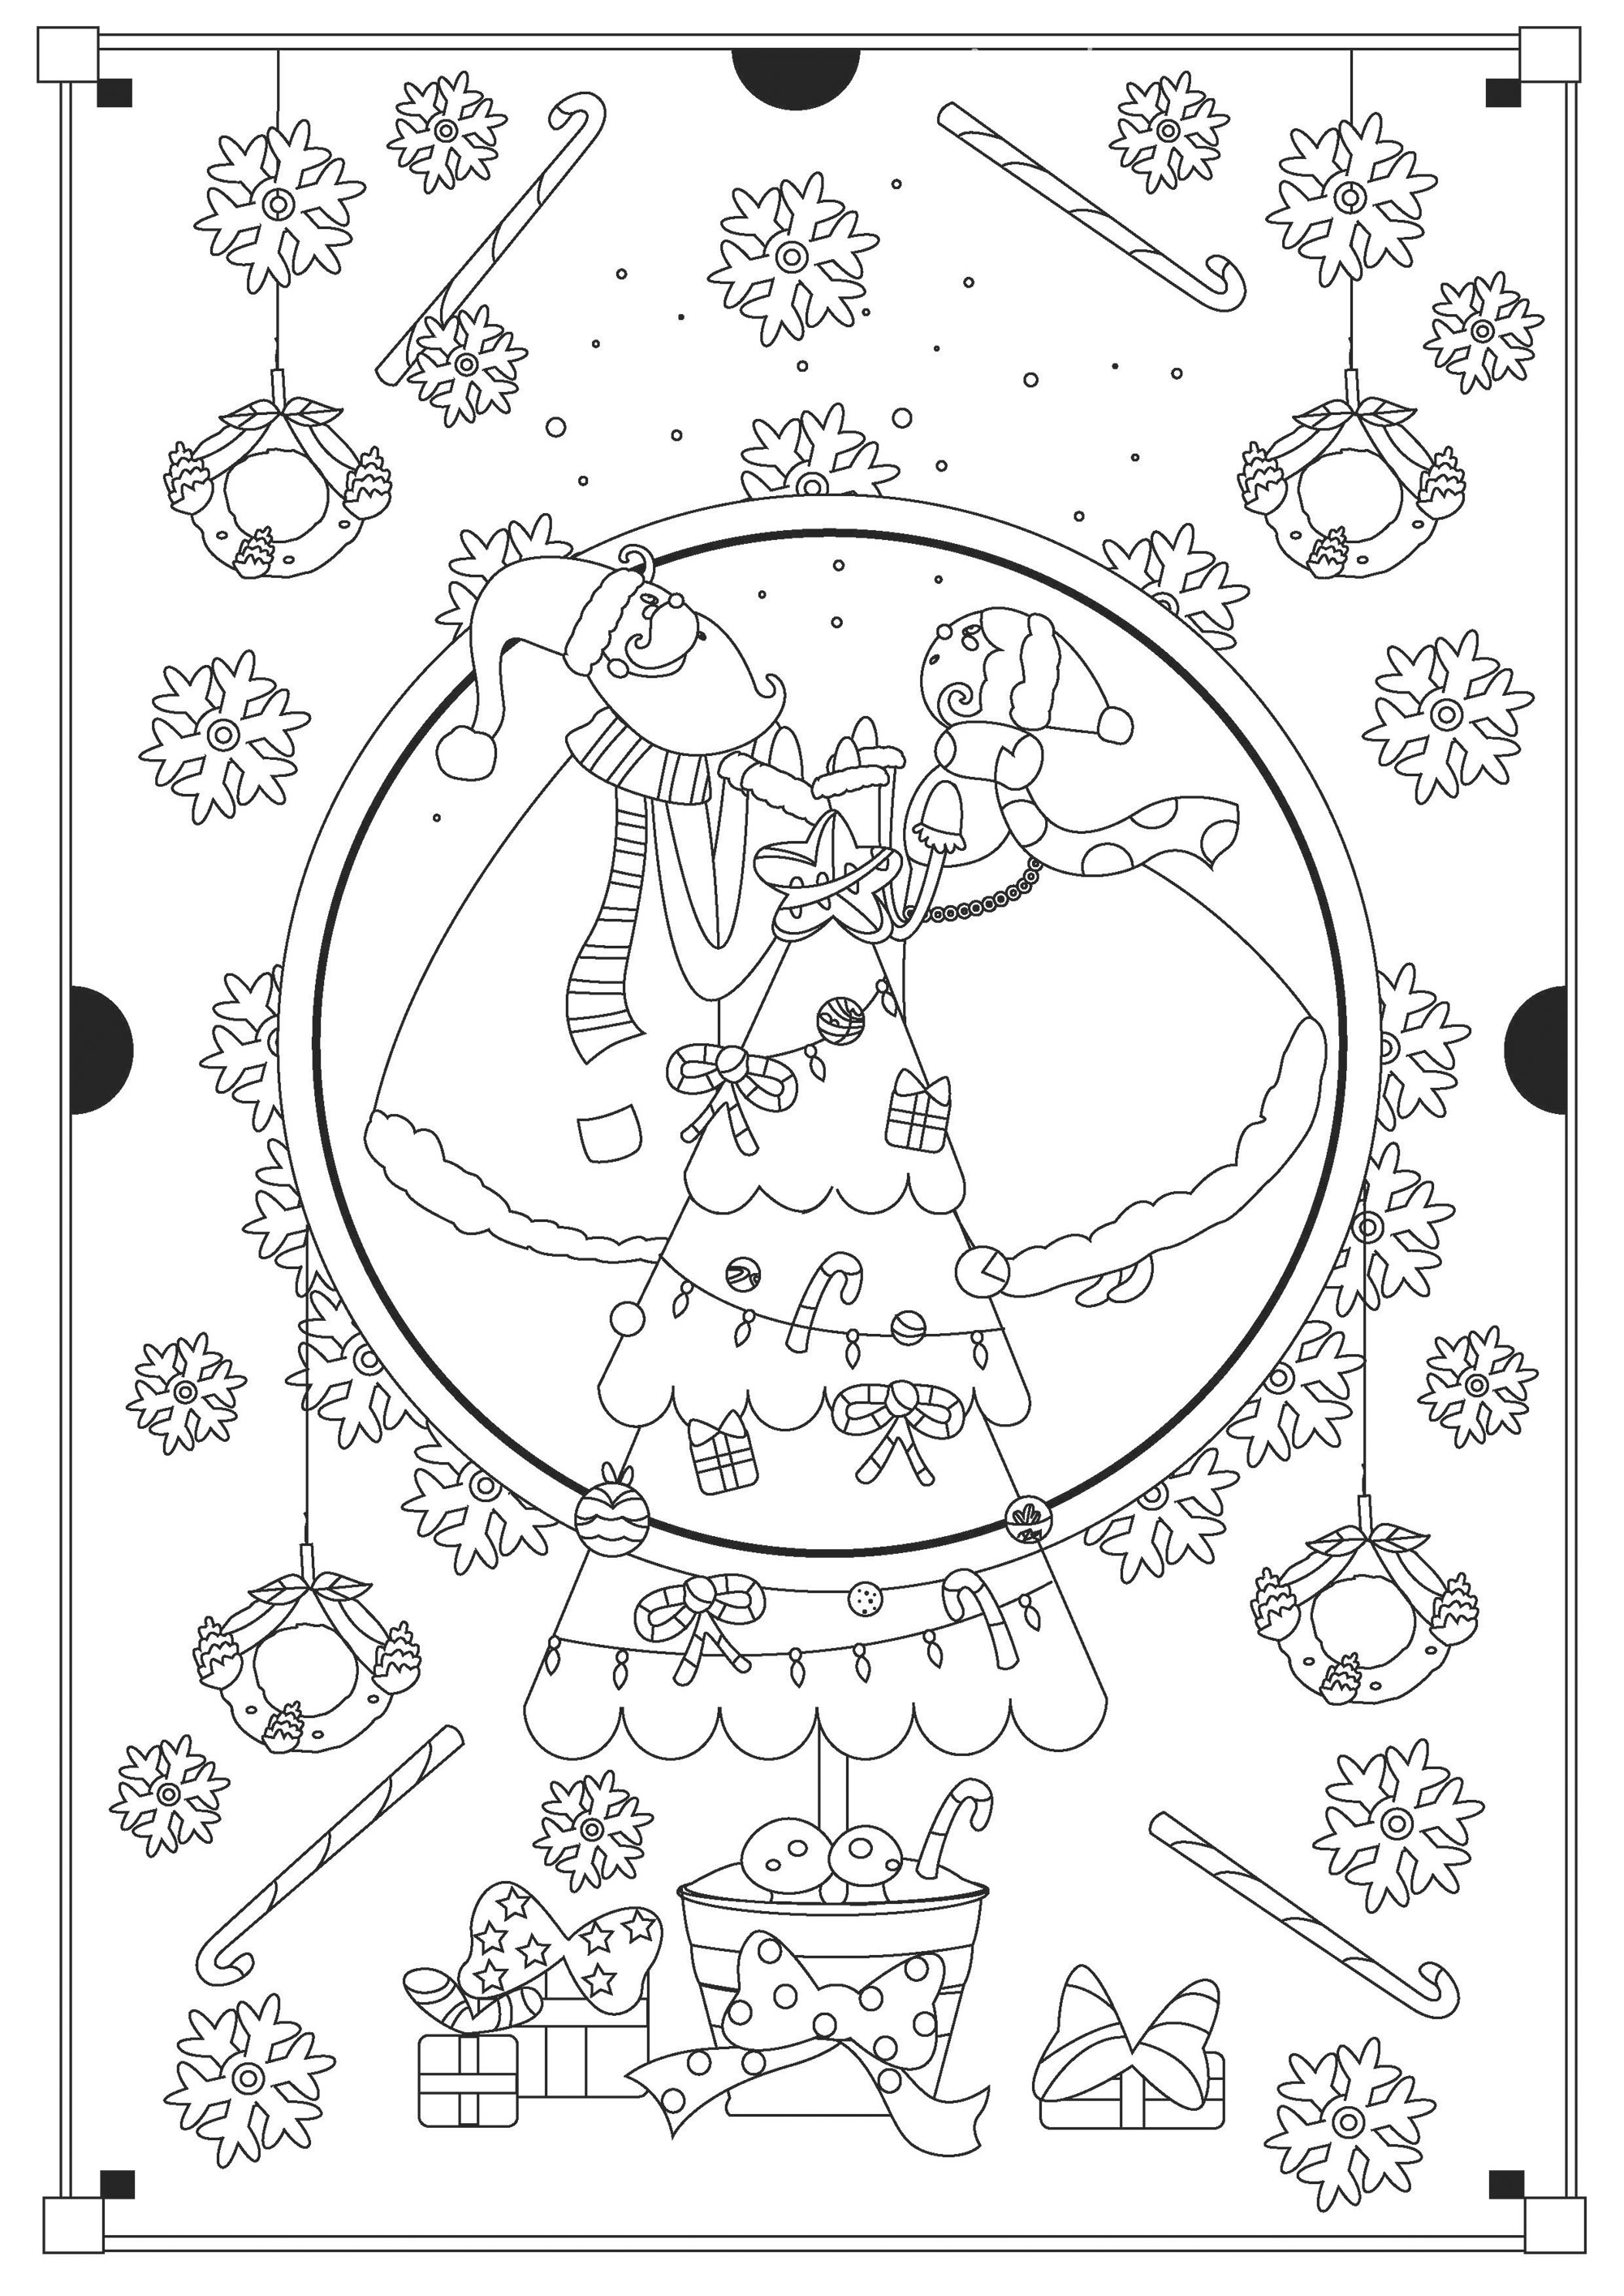 Coloriage de Noël avec le Père Noël et la Mère Noël. Nombreux objets de Noël à colorier autour des personnages et du joli sapin de Noël : cadeaux, bonbons, flocons de neige, etc .., Artiste : Gaelle Picard